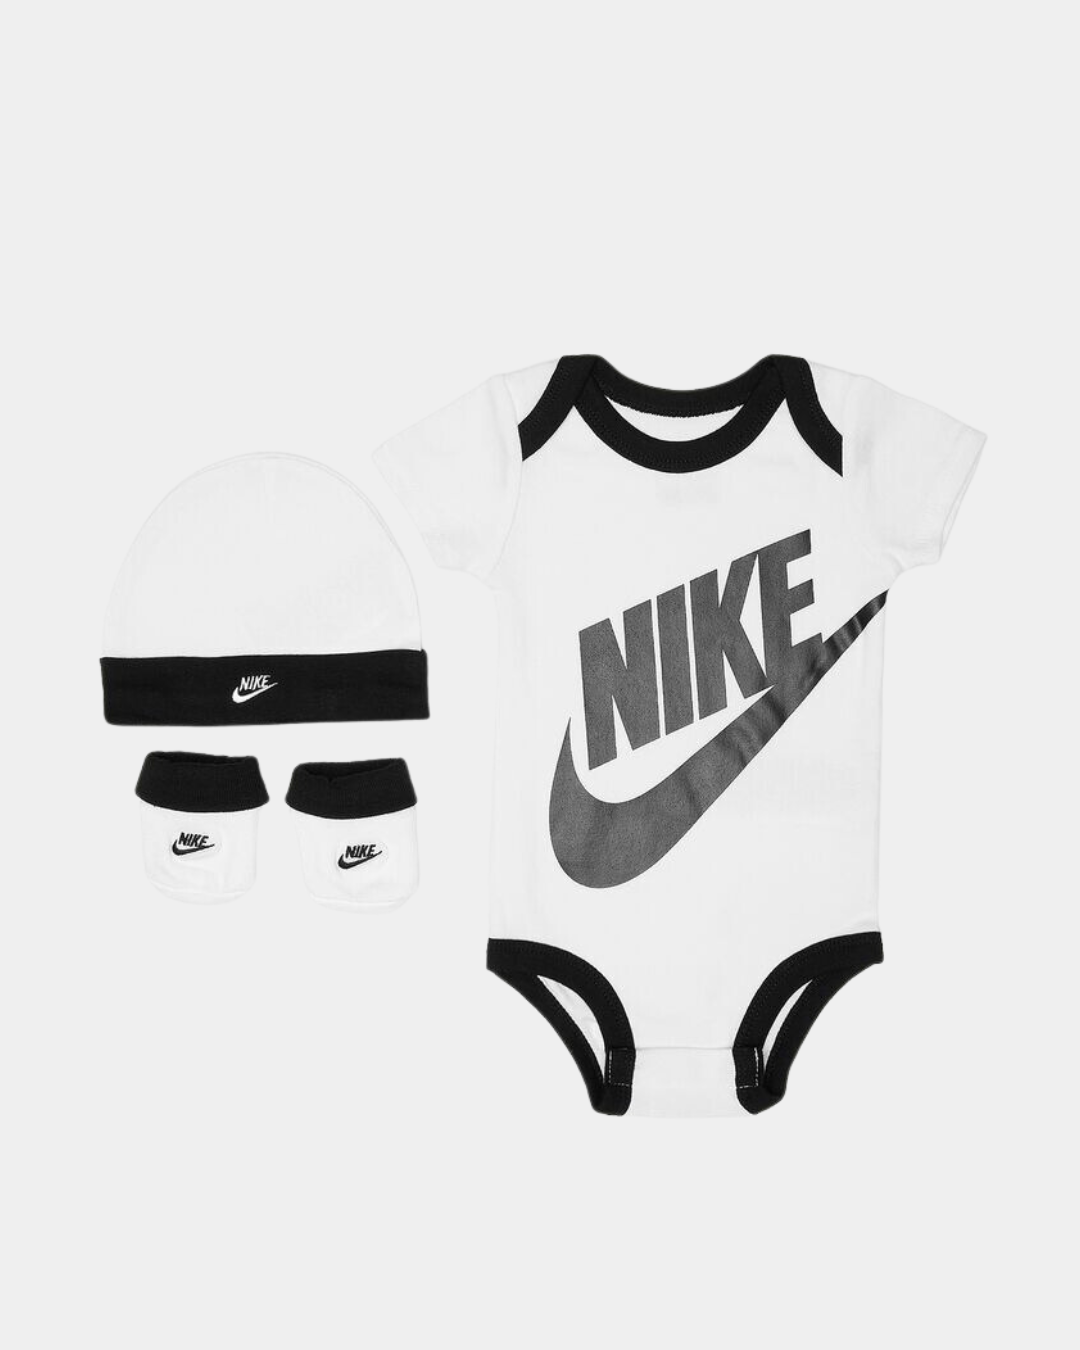 Completo Nike da bambino - Nero/Bianco